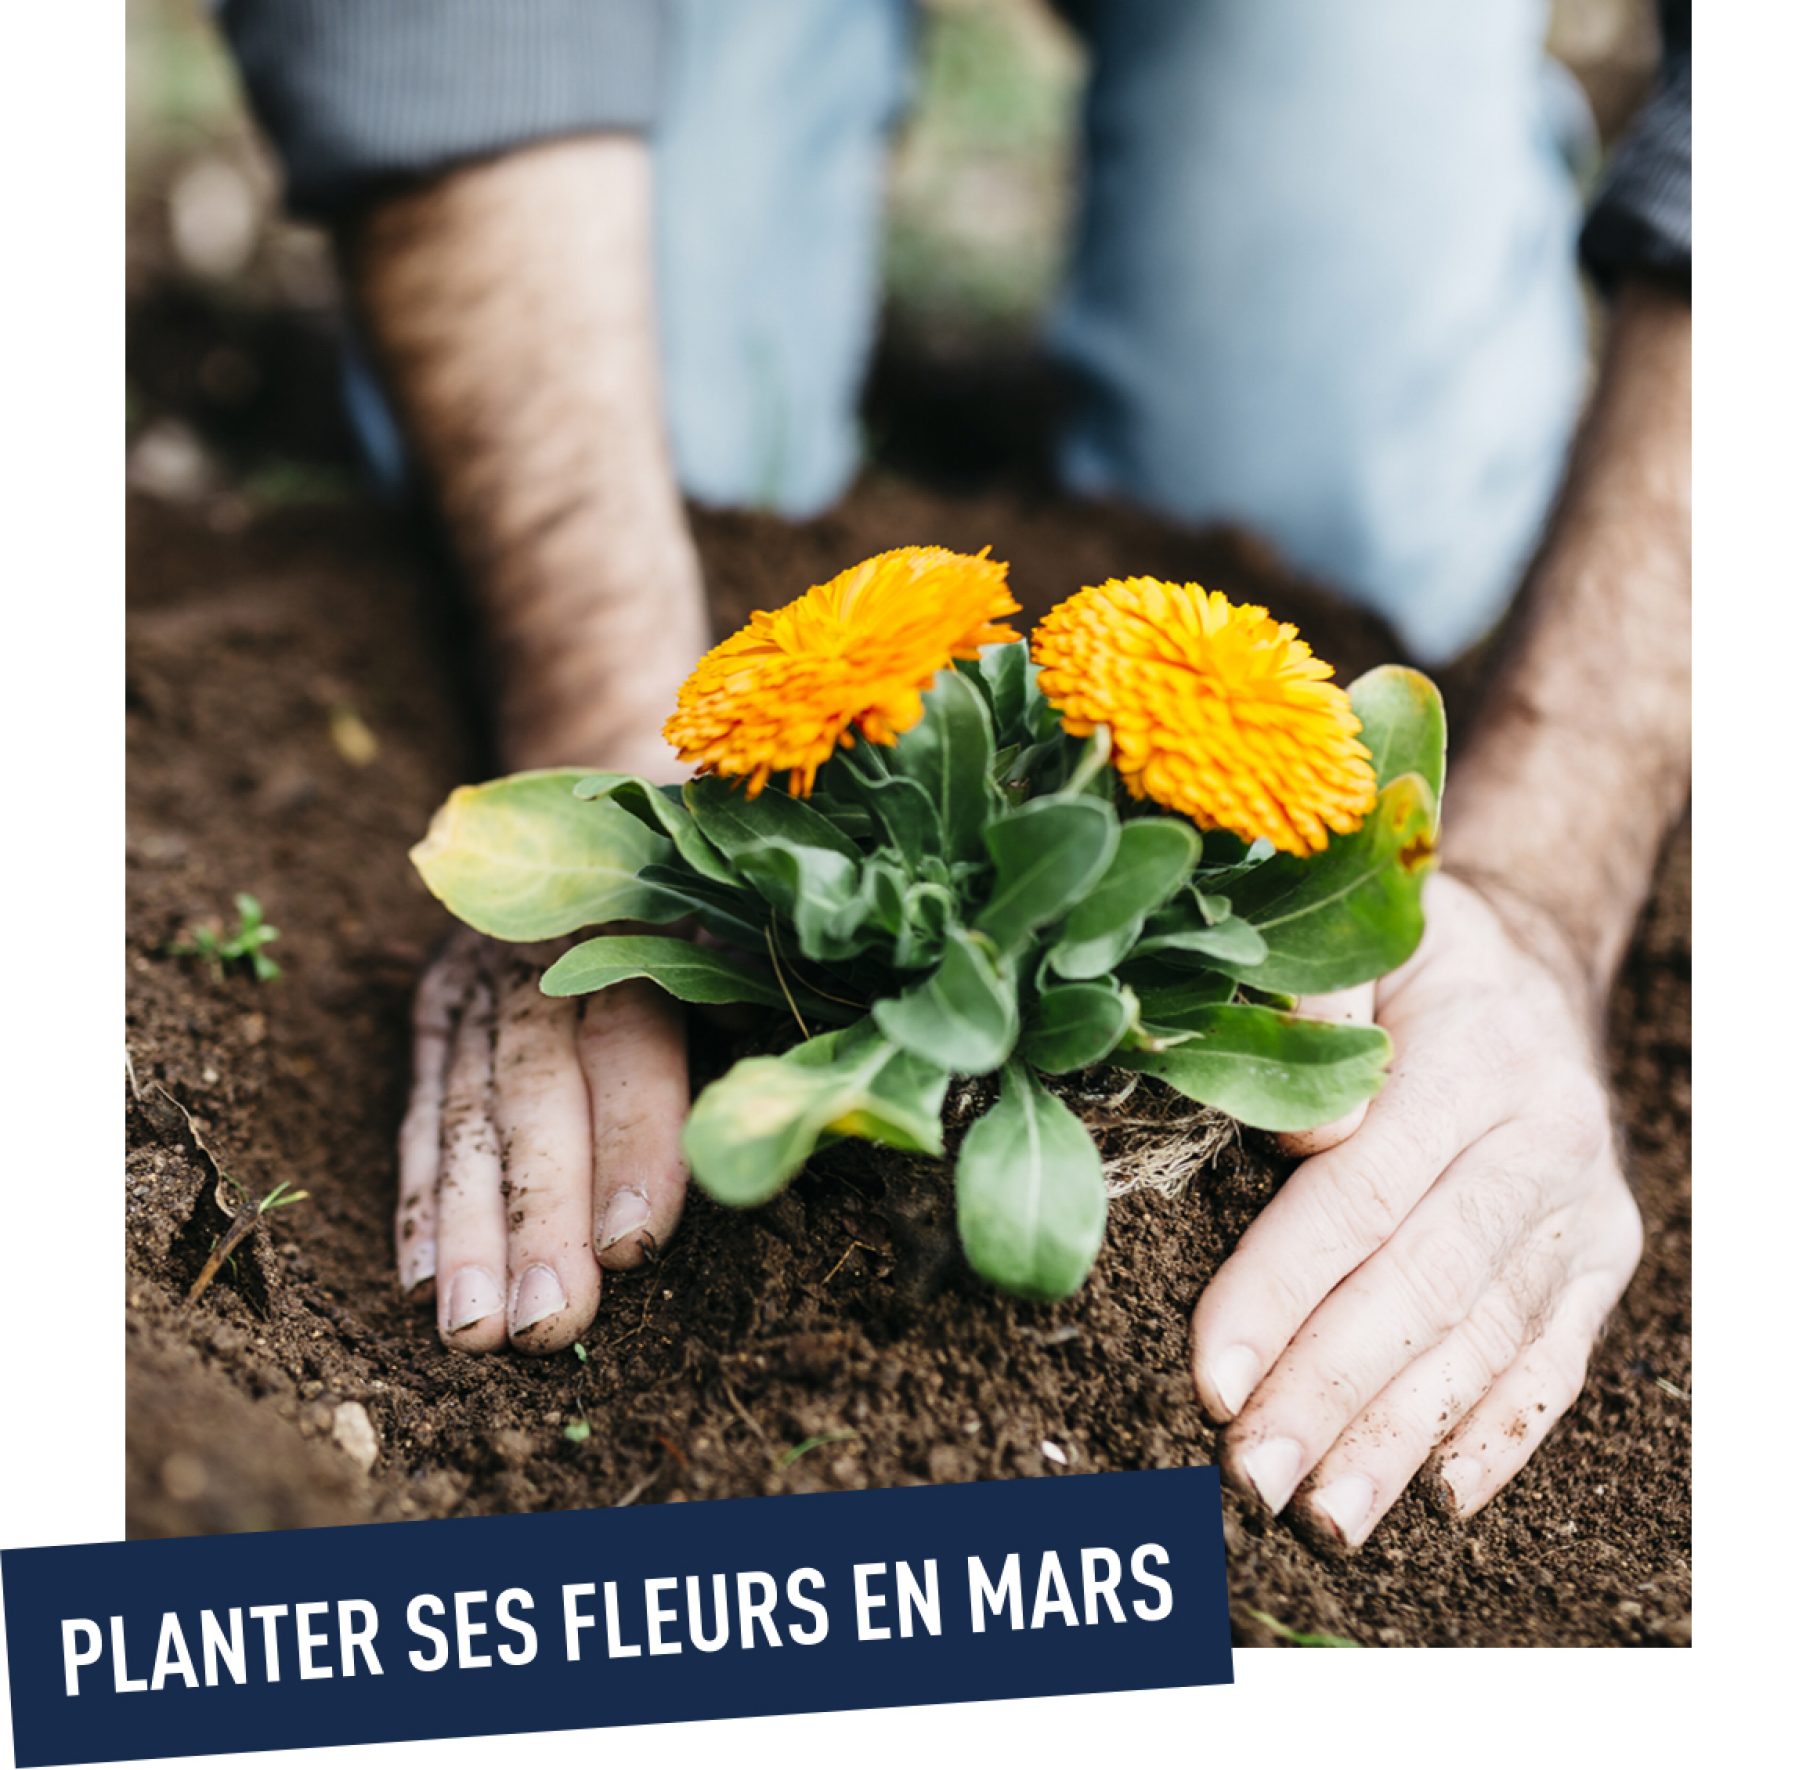 Plantations de mars : préparez votre jardin